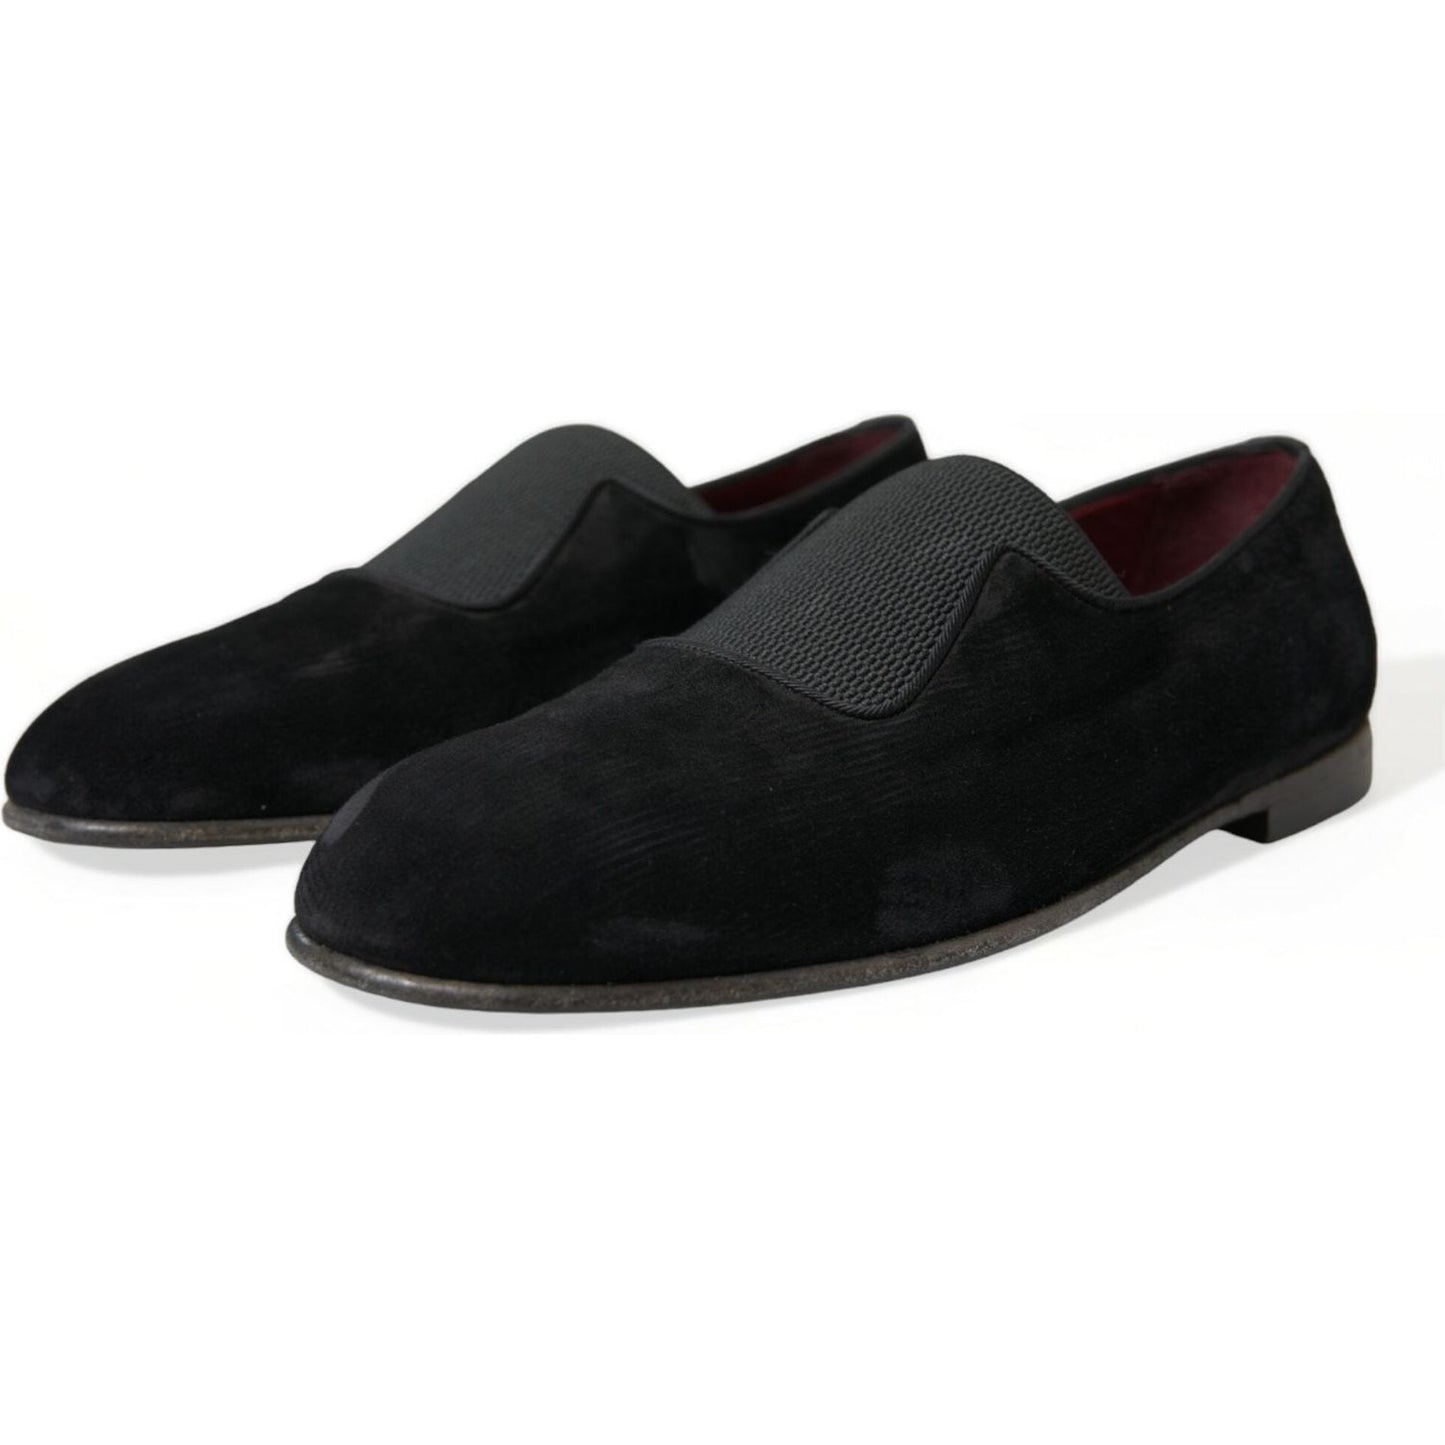 Dolce & Gabbana | Elegant Black Velor Loafers for the Discerning Gentleman| McRichard Designer Brands   